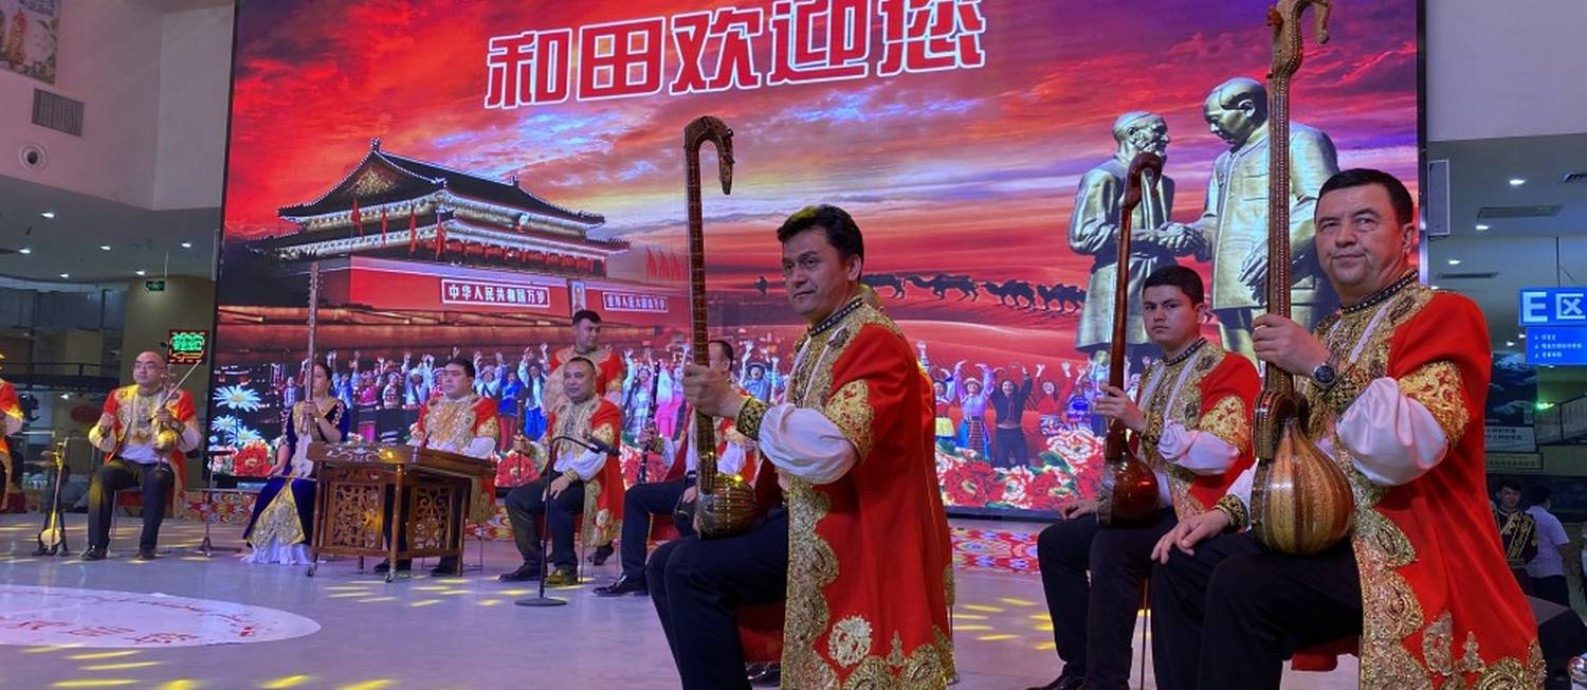 Show de música uigur em Hotan; ao fundo, imagens da Cidade Proibida e de Mao Tsé-tung (à direita) Foto: Marcelo Ninio / Agência O Globo